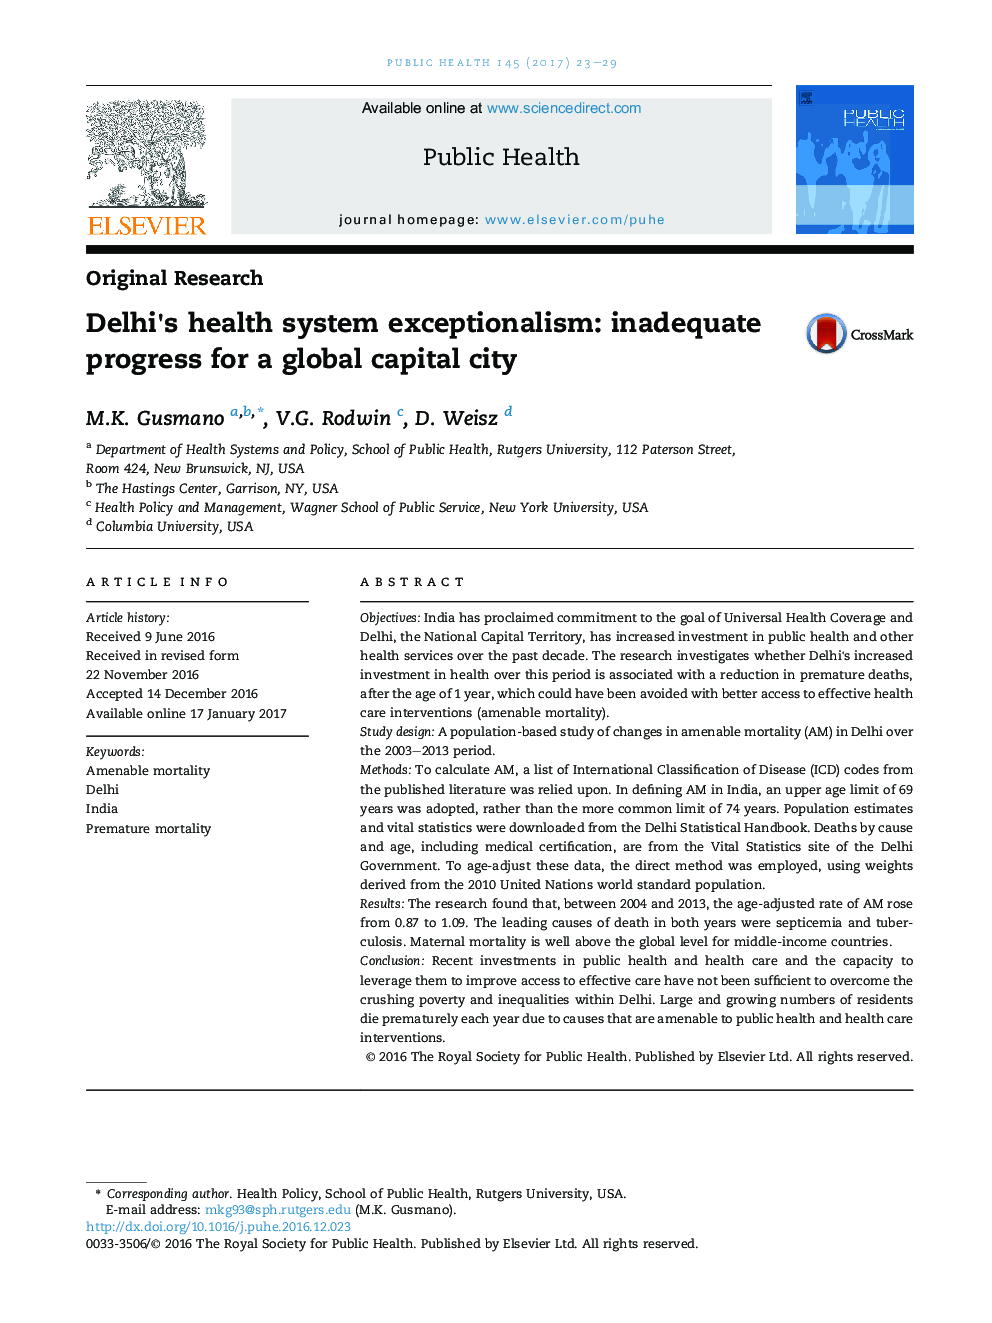 استقلال سیستم بهداشت دهلی نو: پیشرفت ناکافی برای یک شهر پایتخت جهانی 